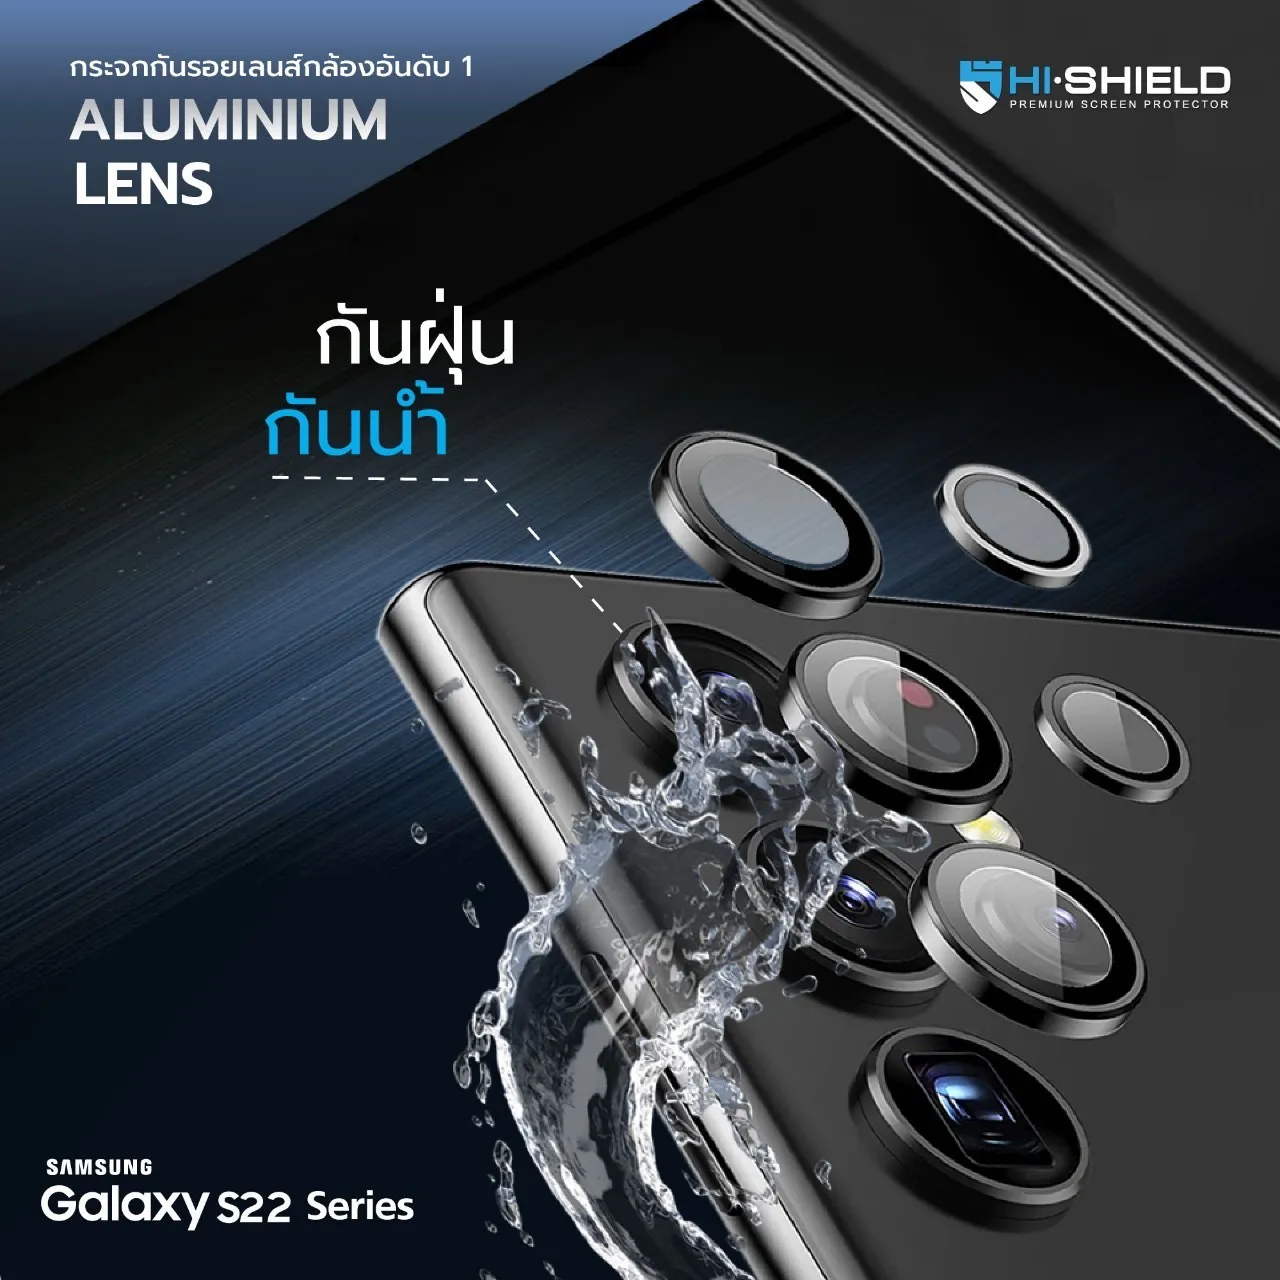 กระจกนิรภัยเลนส์กล้อง Hishield รุ่น Aluminium Lens - Galaxy S22 Ultra